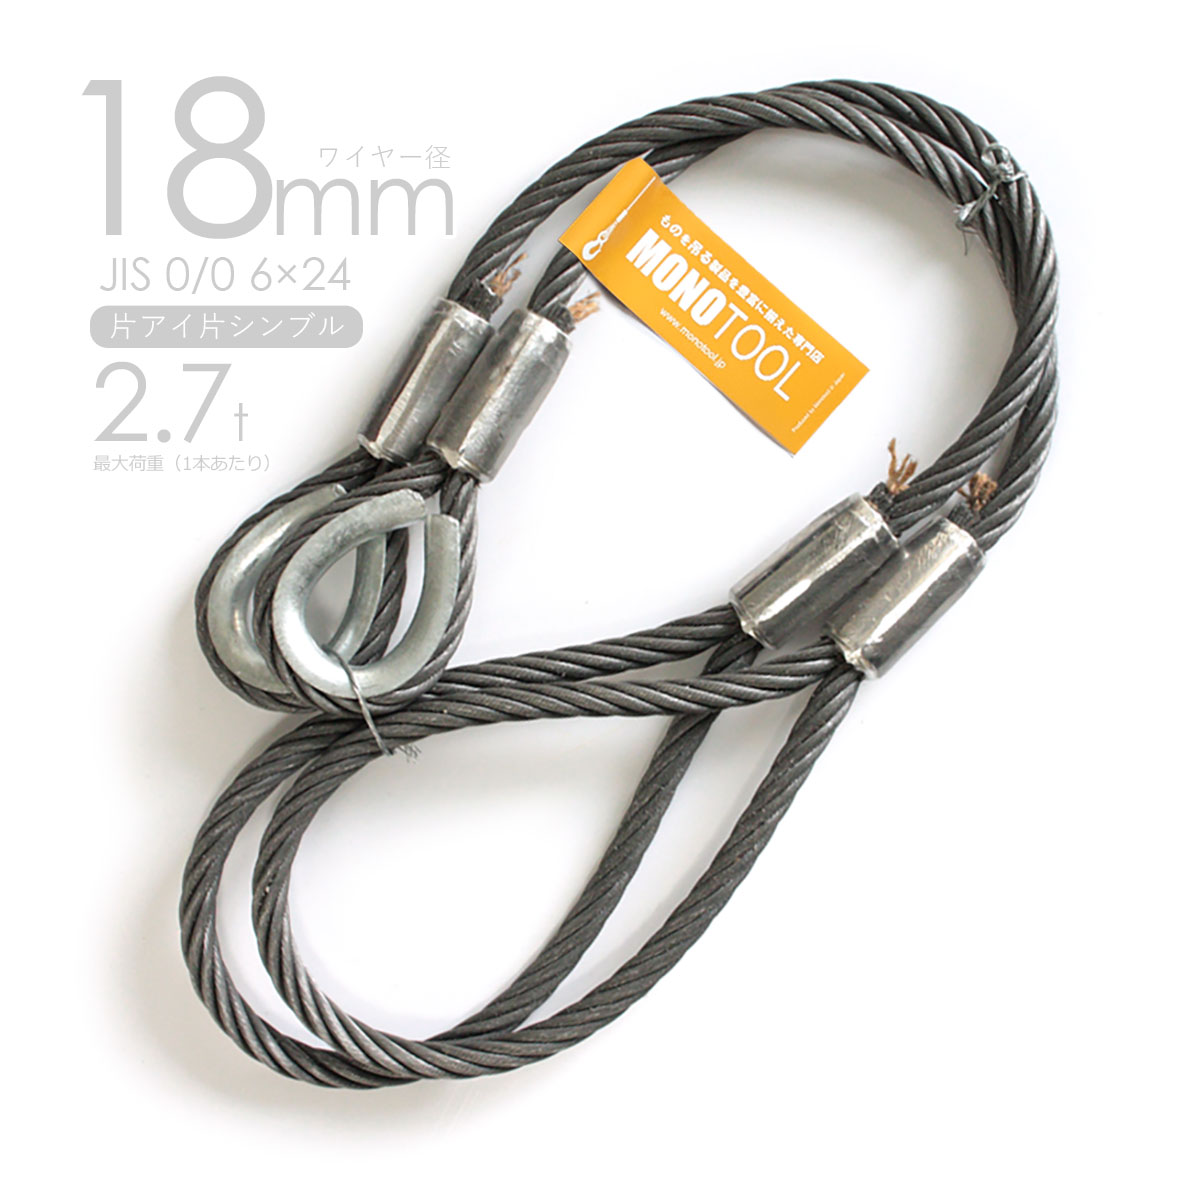 アウトワイヤロープ JIS規格外 6×24G O 径8mm 長さ200m 通販